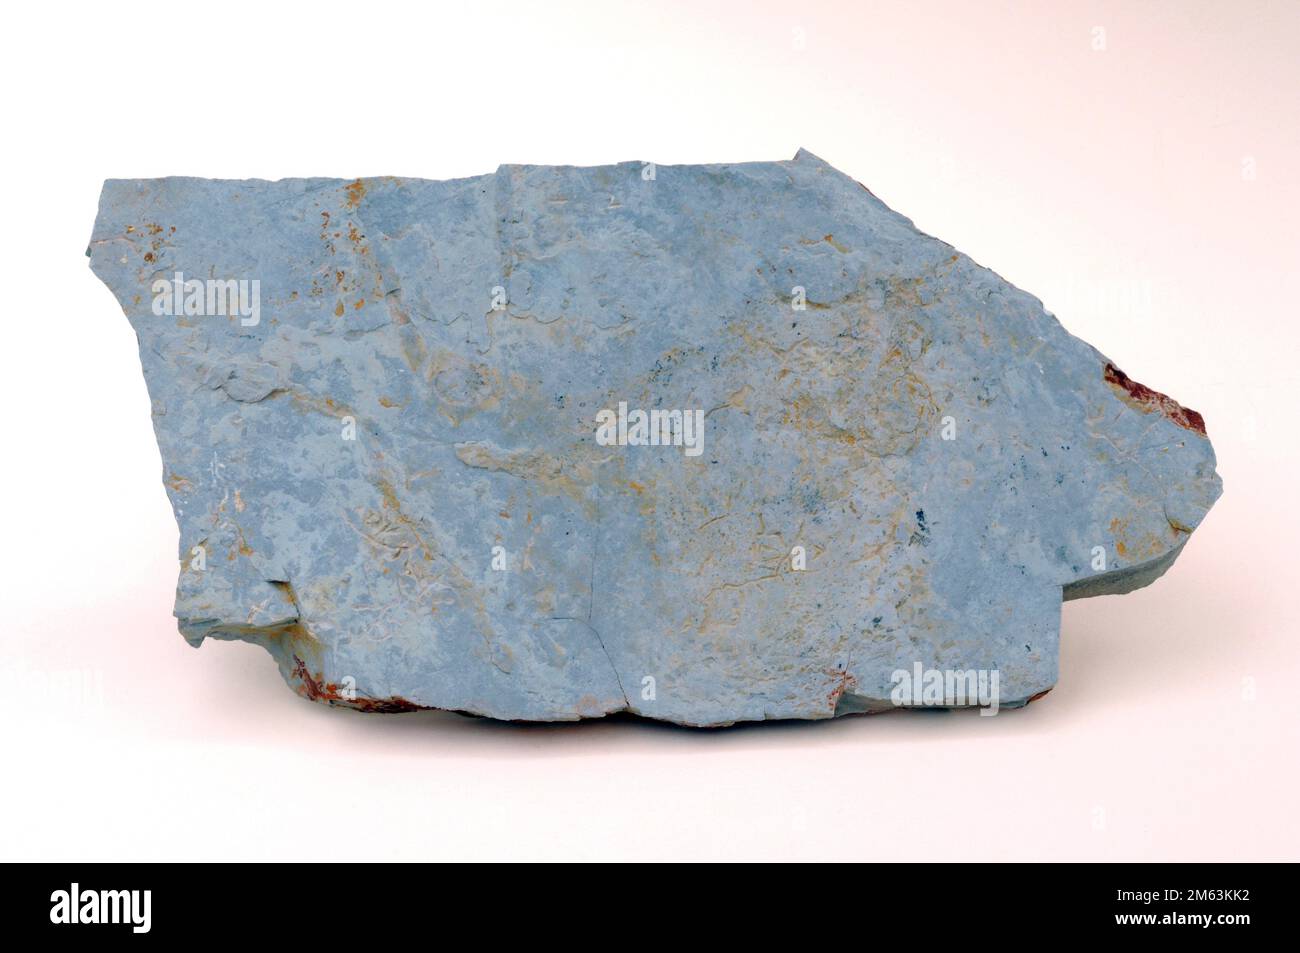 Kalkstein ist ein Karbonat-Sedimentgestein. Probe. Stockfoto